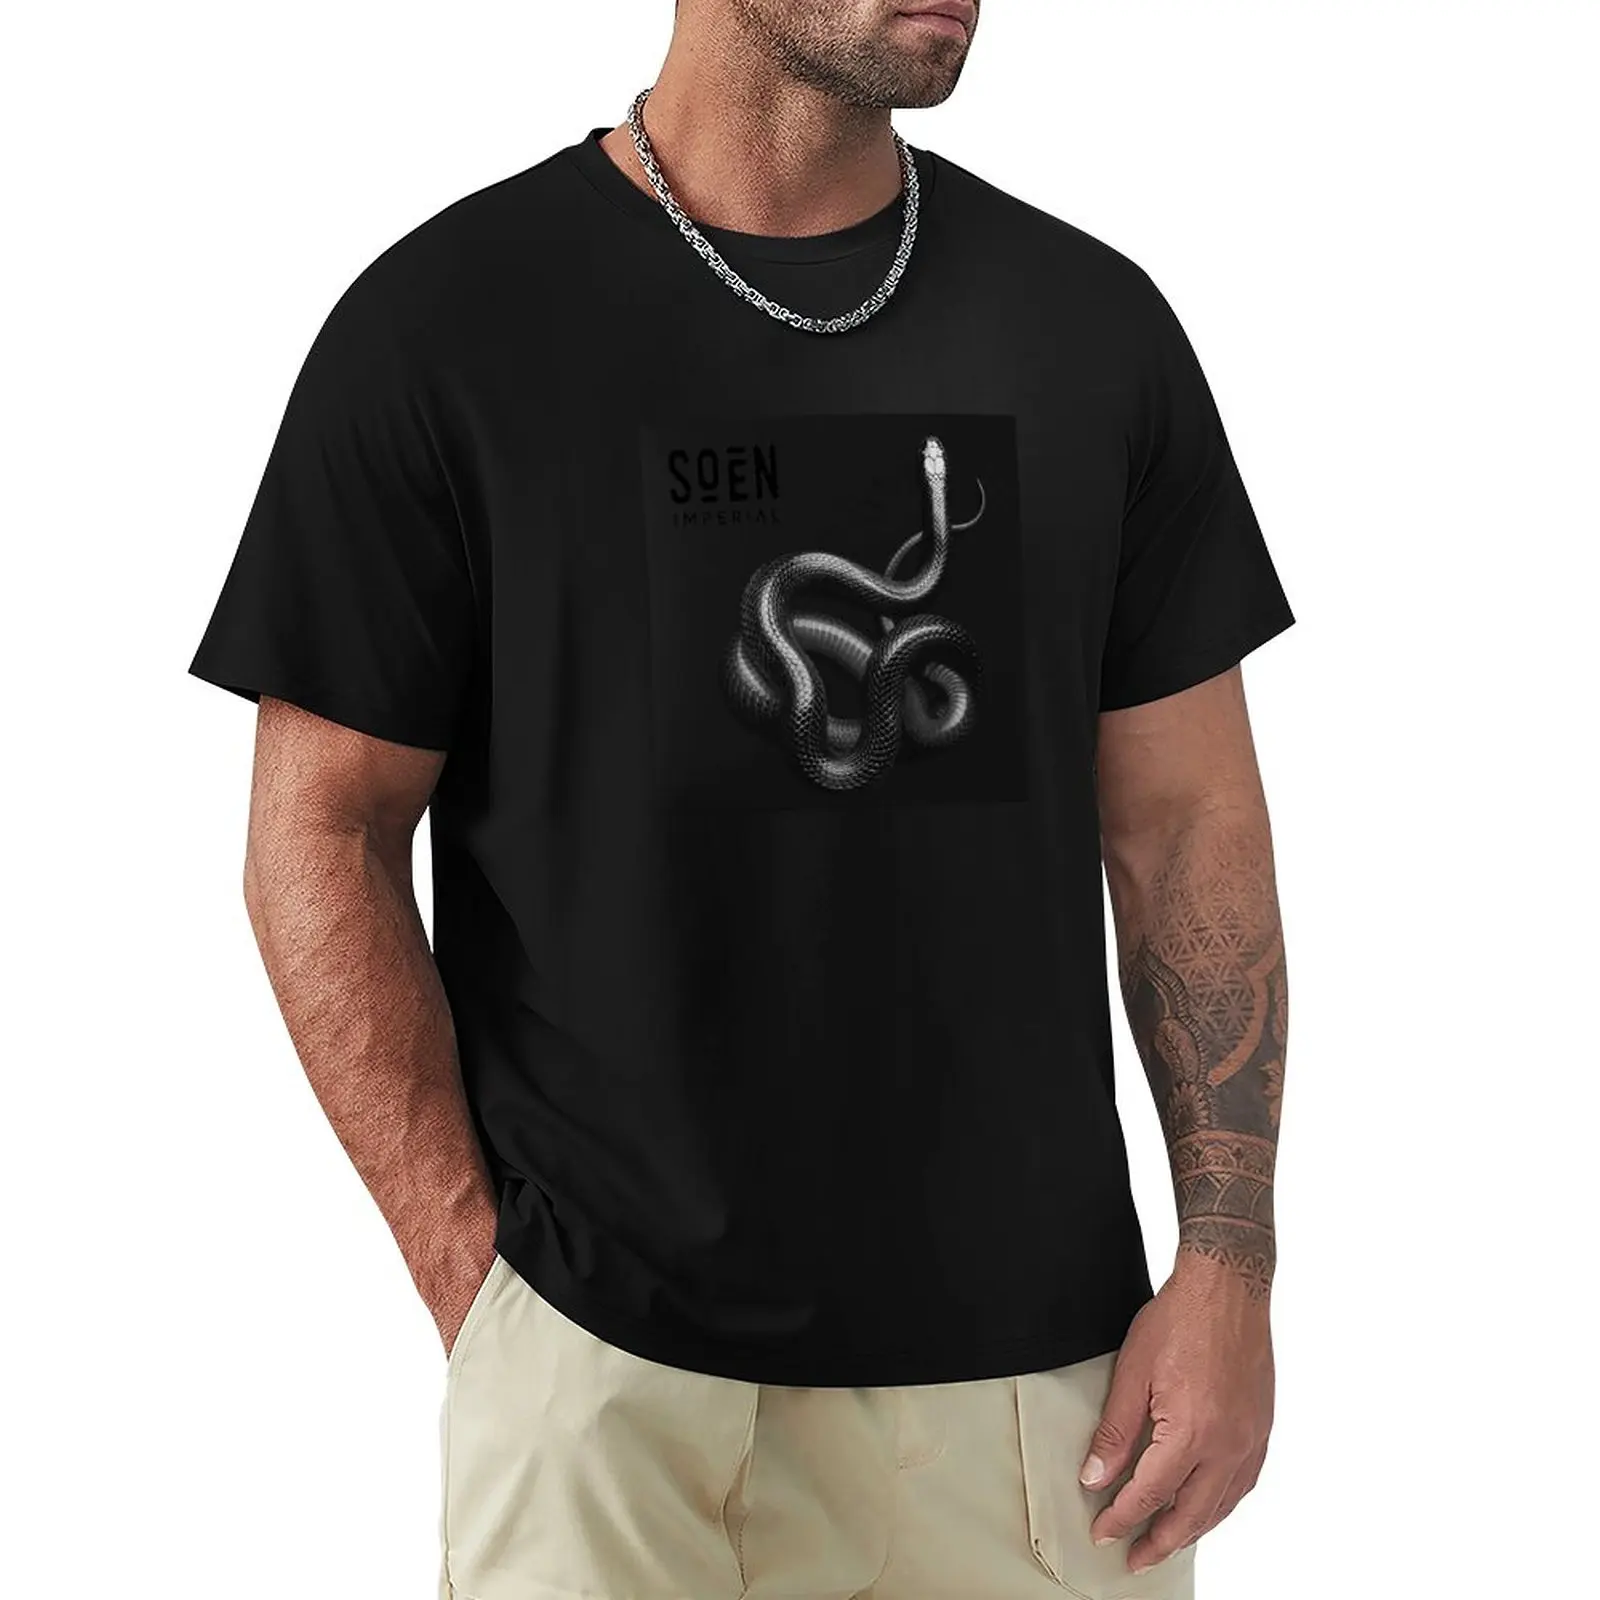 Футболка со змеиным металлом, индивидуальные футболки, топы, черные футболки для мужчин